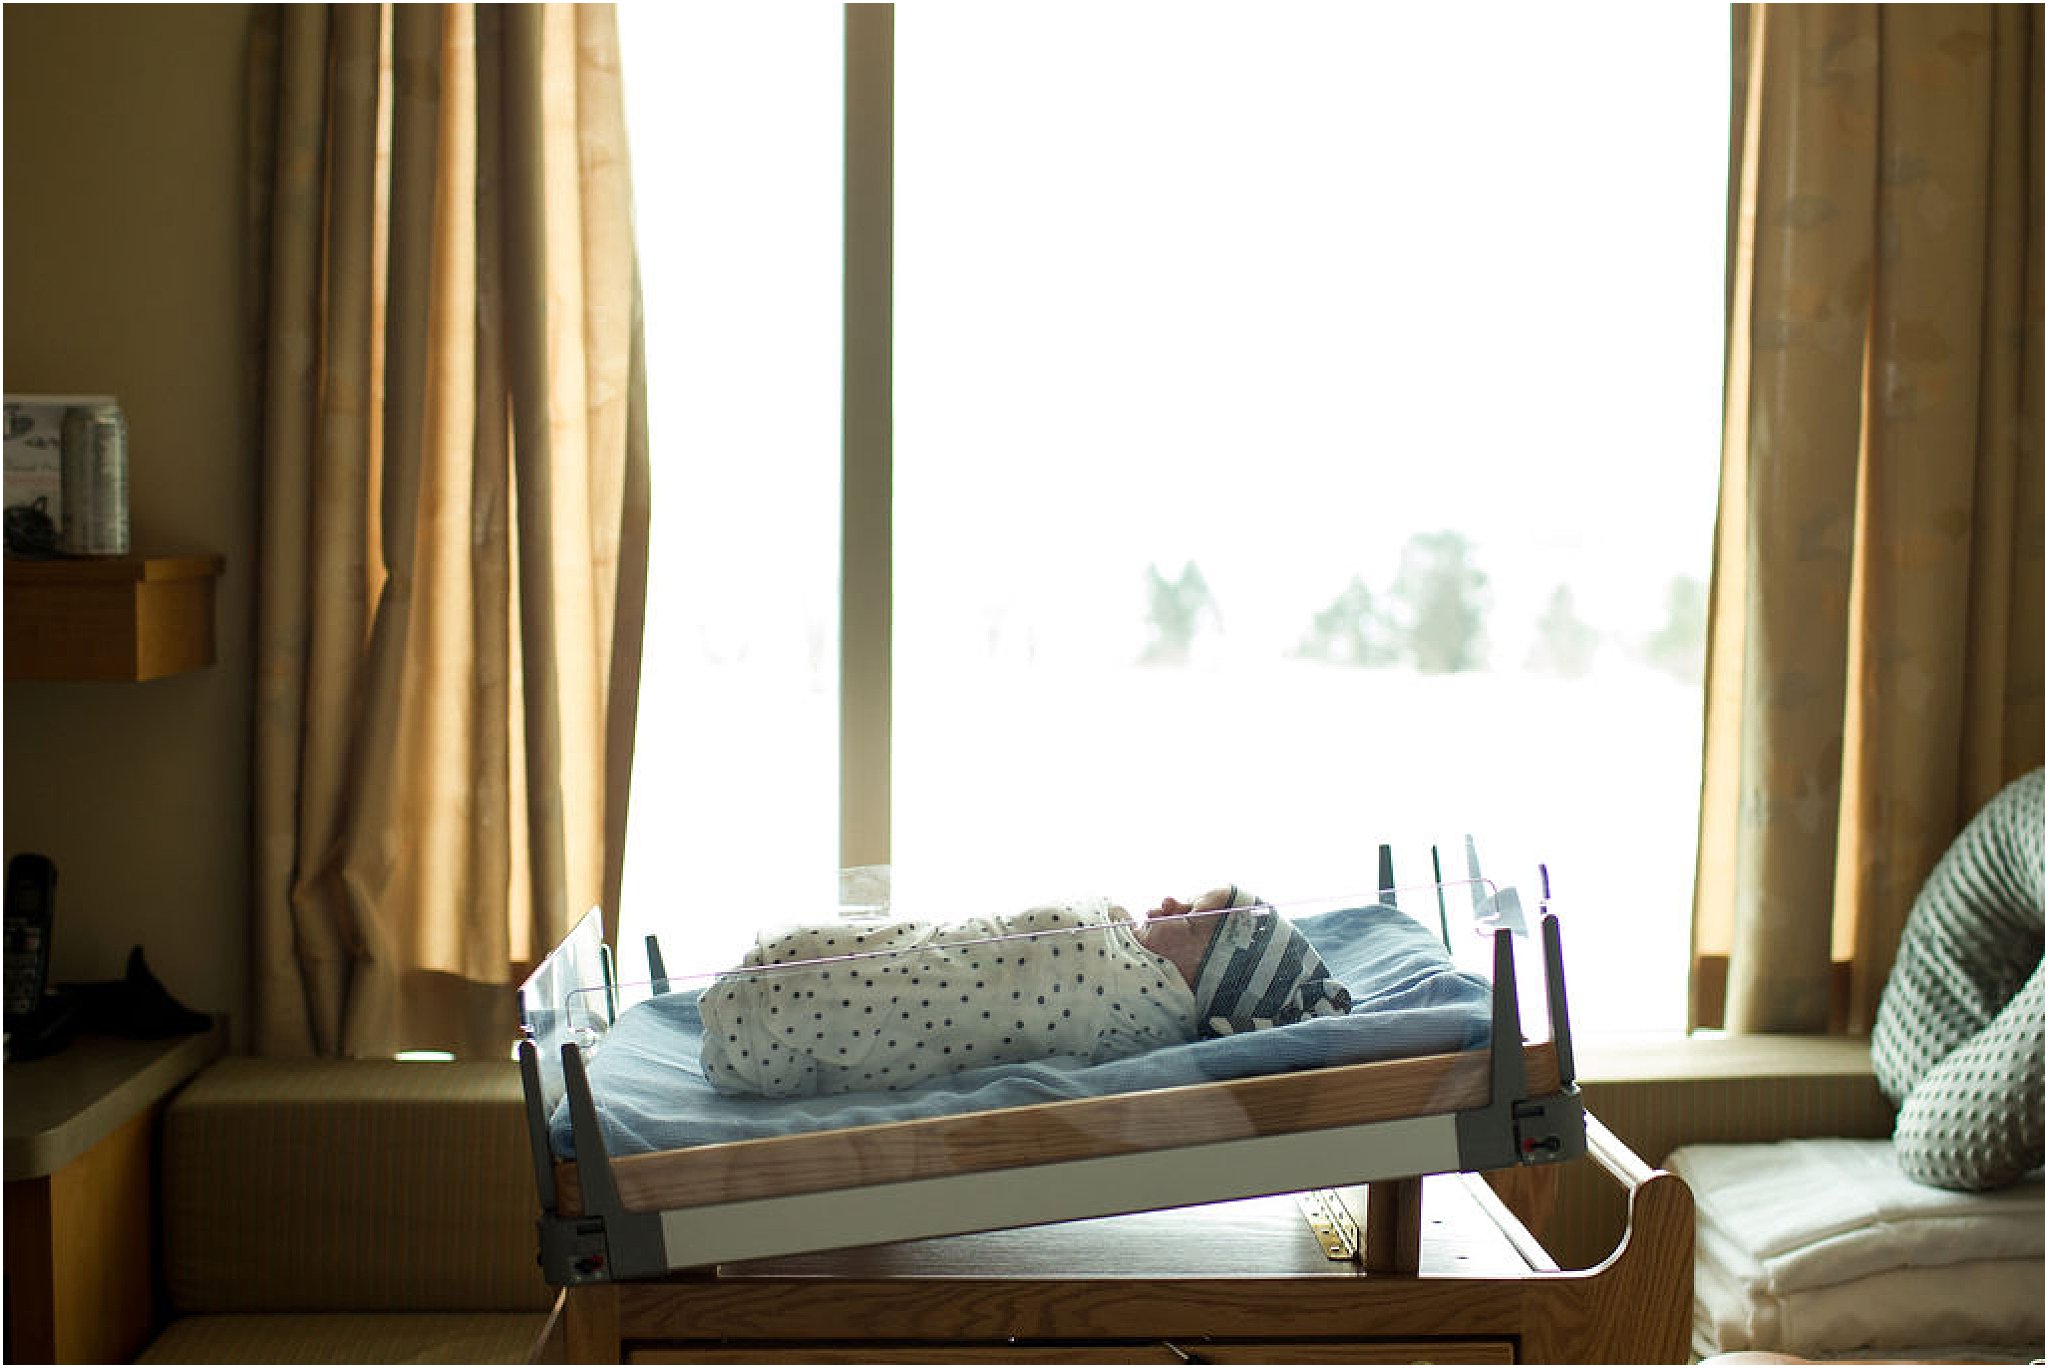 Newborn boy in hospital bassinet